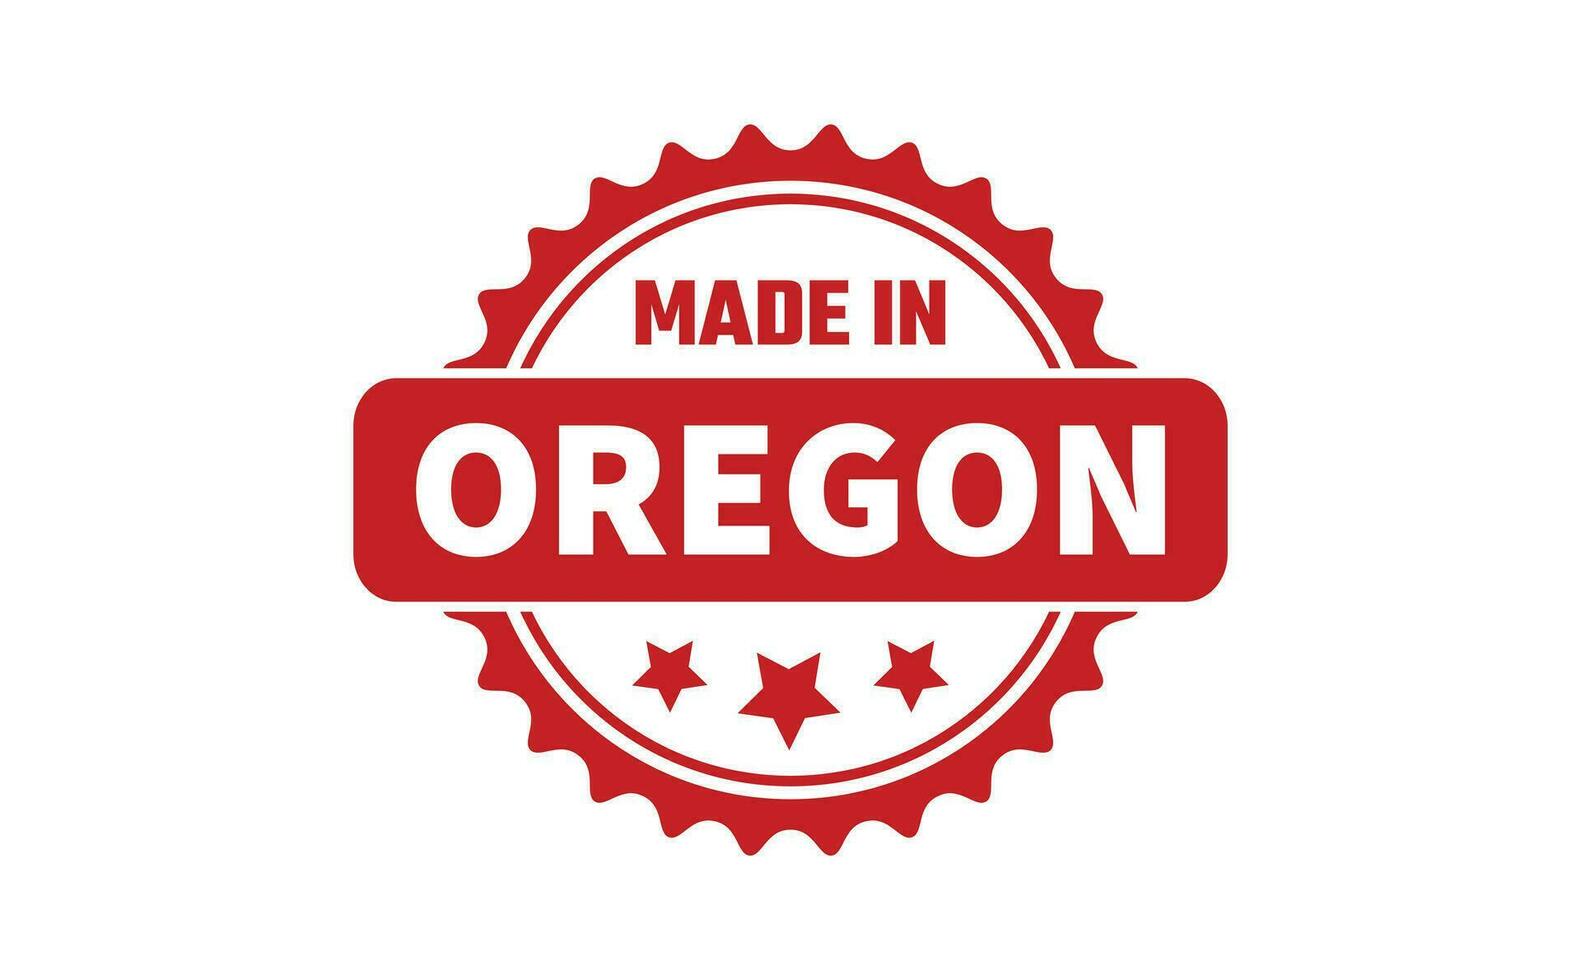 fabriqué dans Oregon caoutchouc timbre vecteur